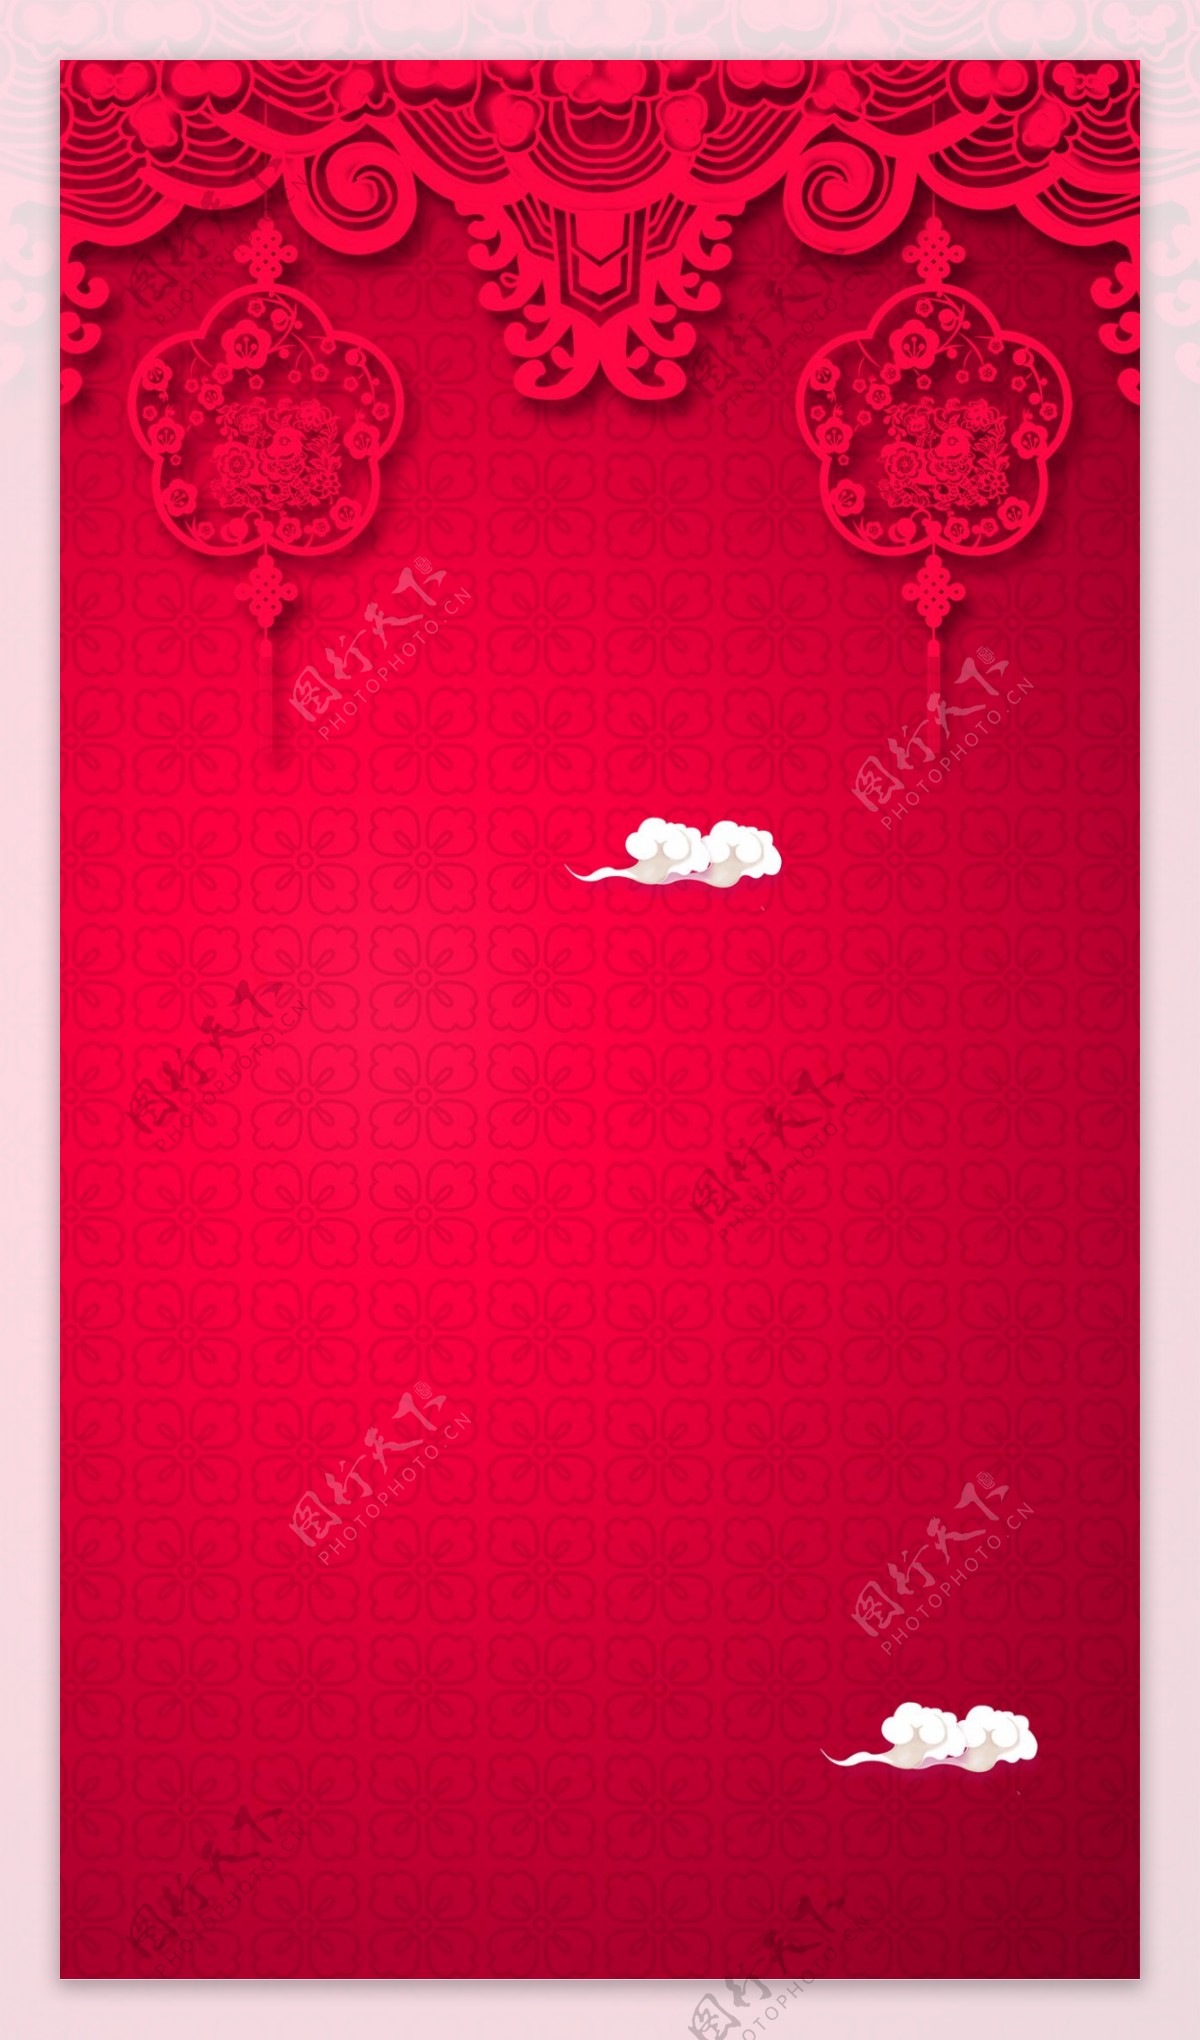 中国风红色花纹剪纸H5背景素材